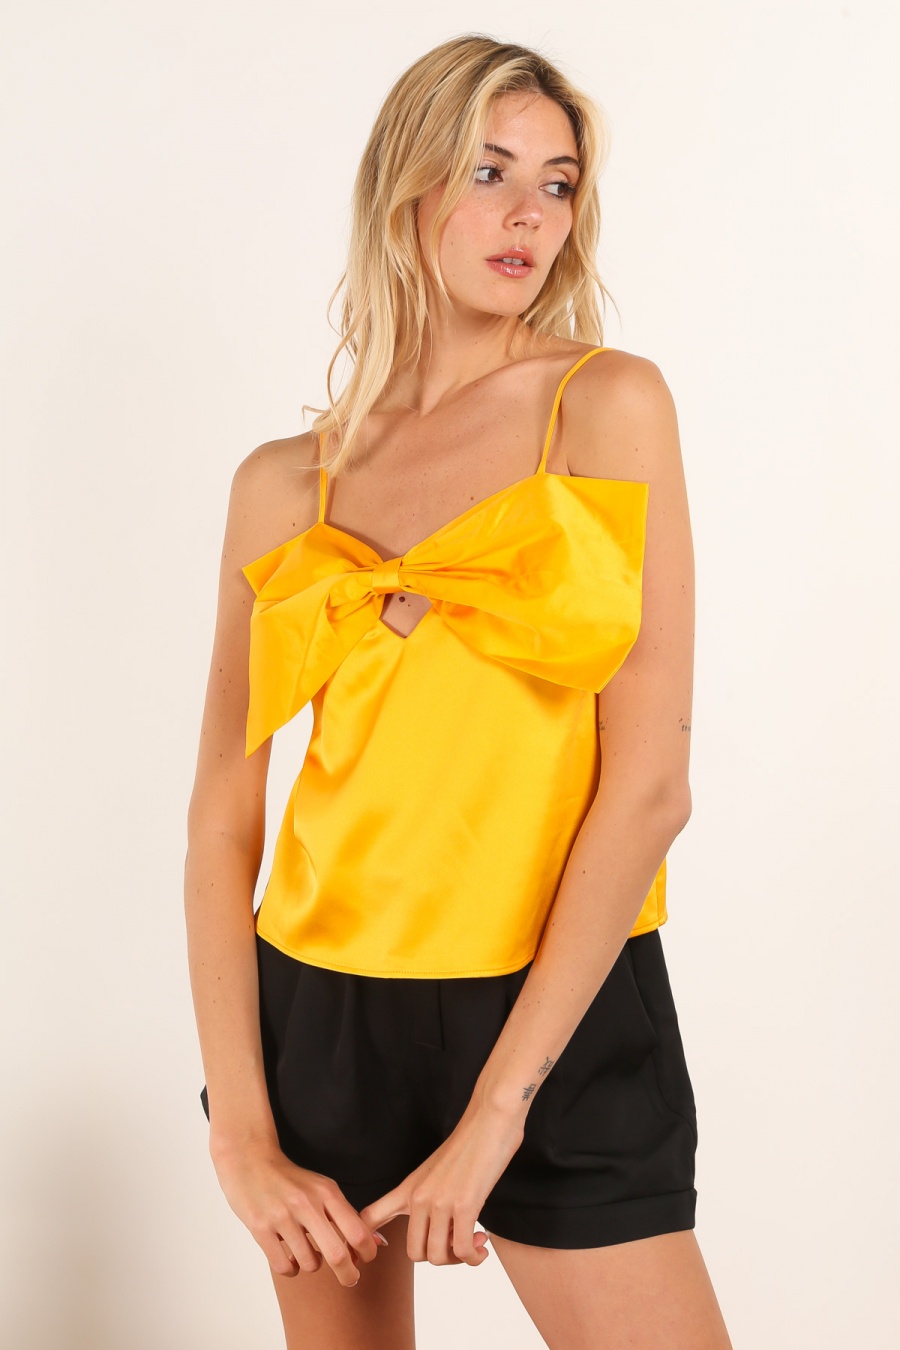 Camisetas sin mangas Mujer Yellow Daphnea 5056 #c Efashion Paris